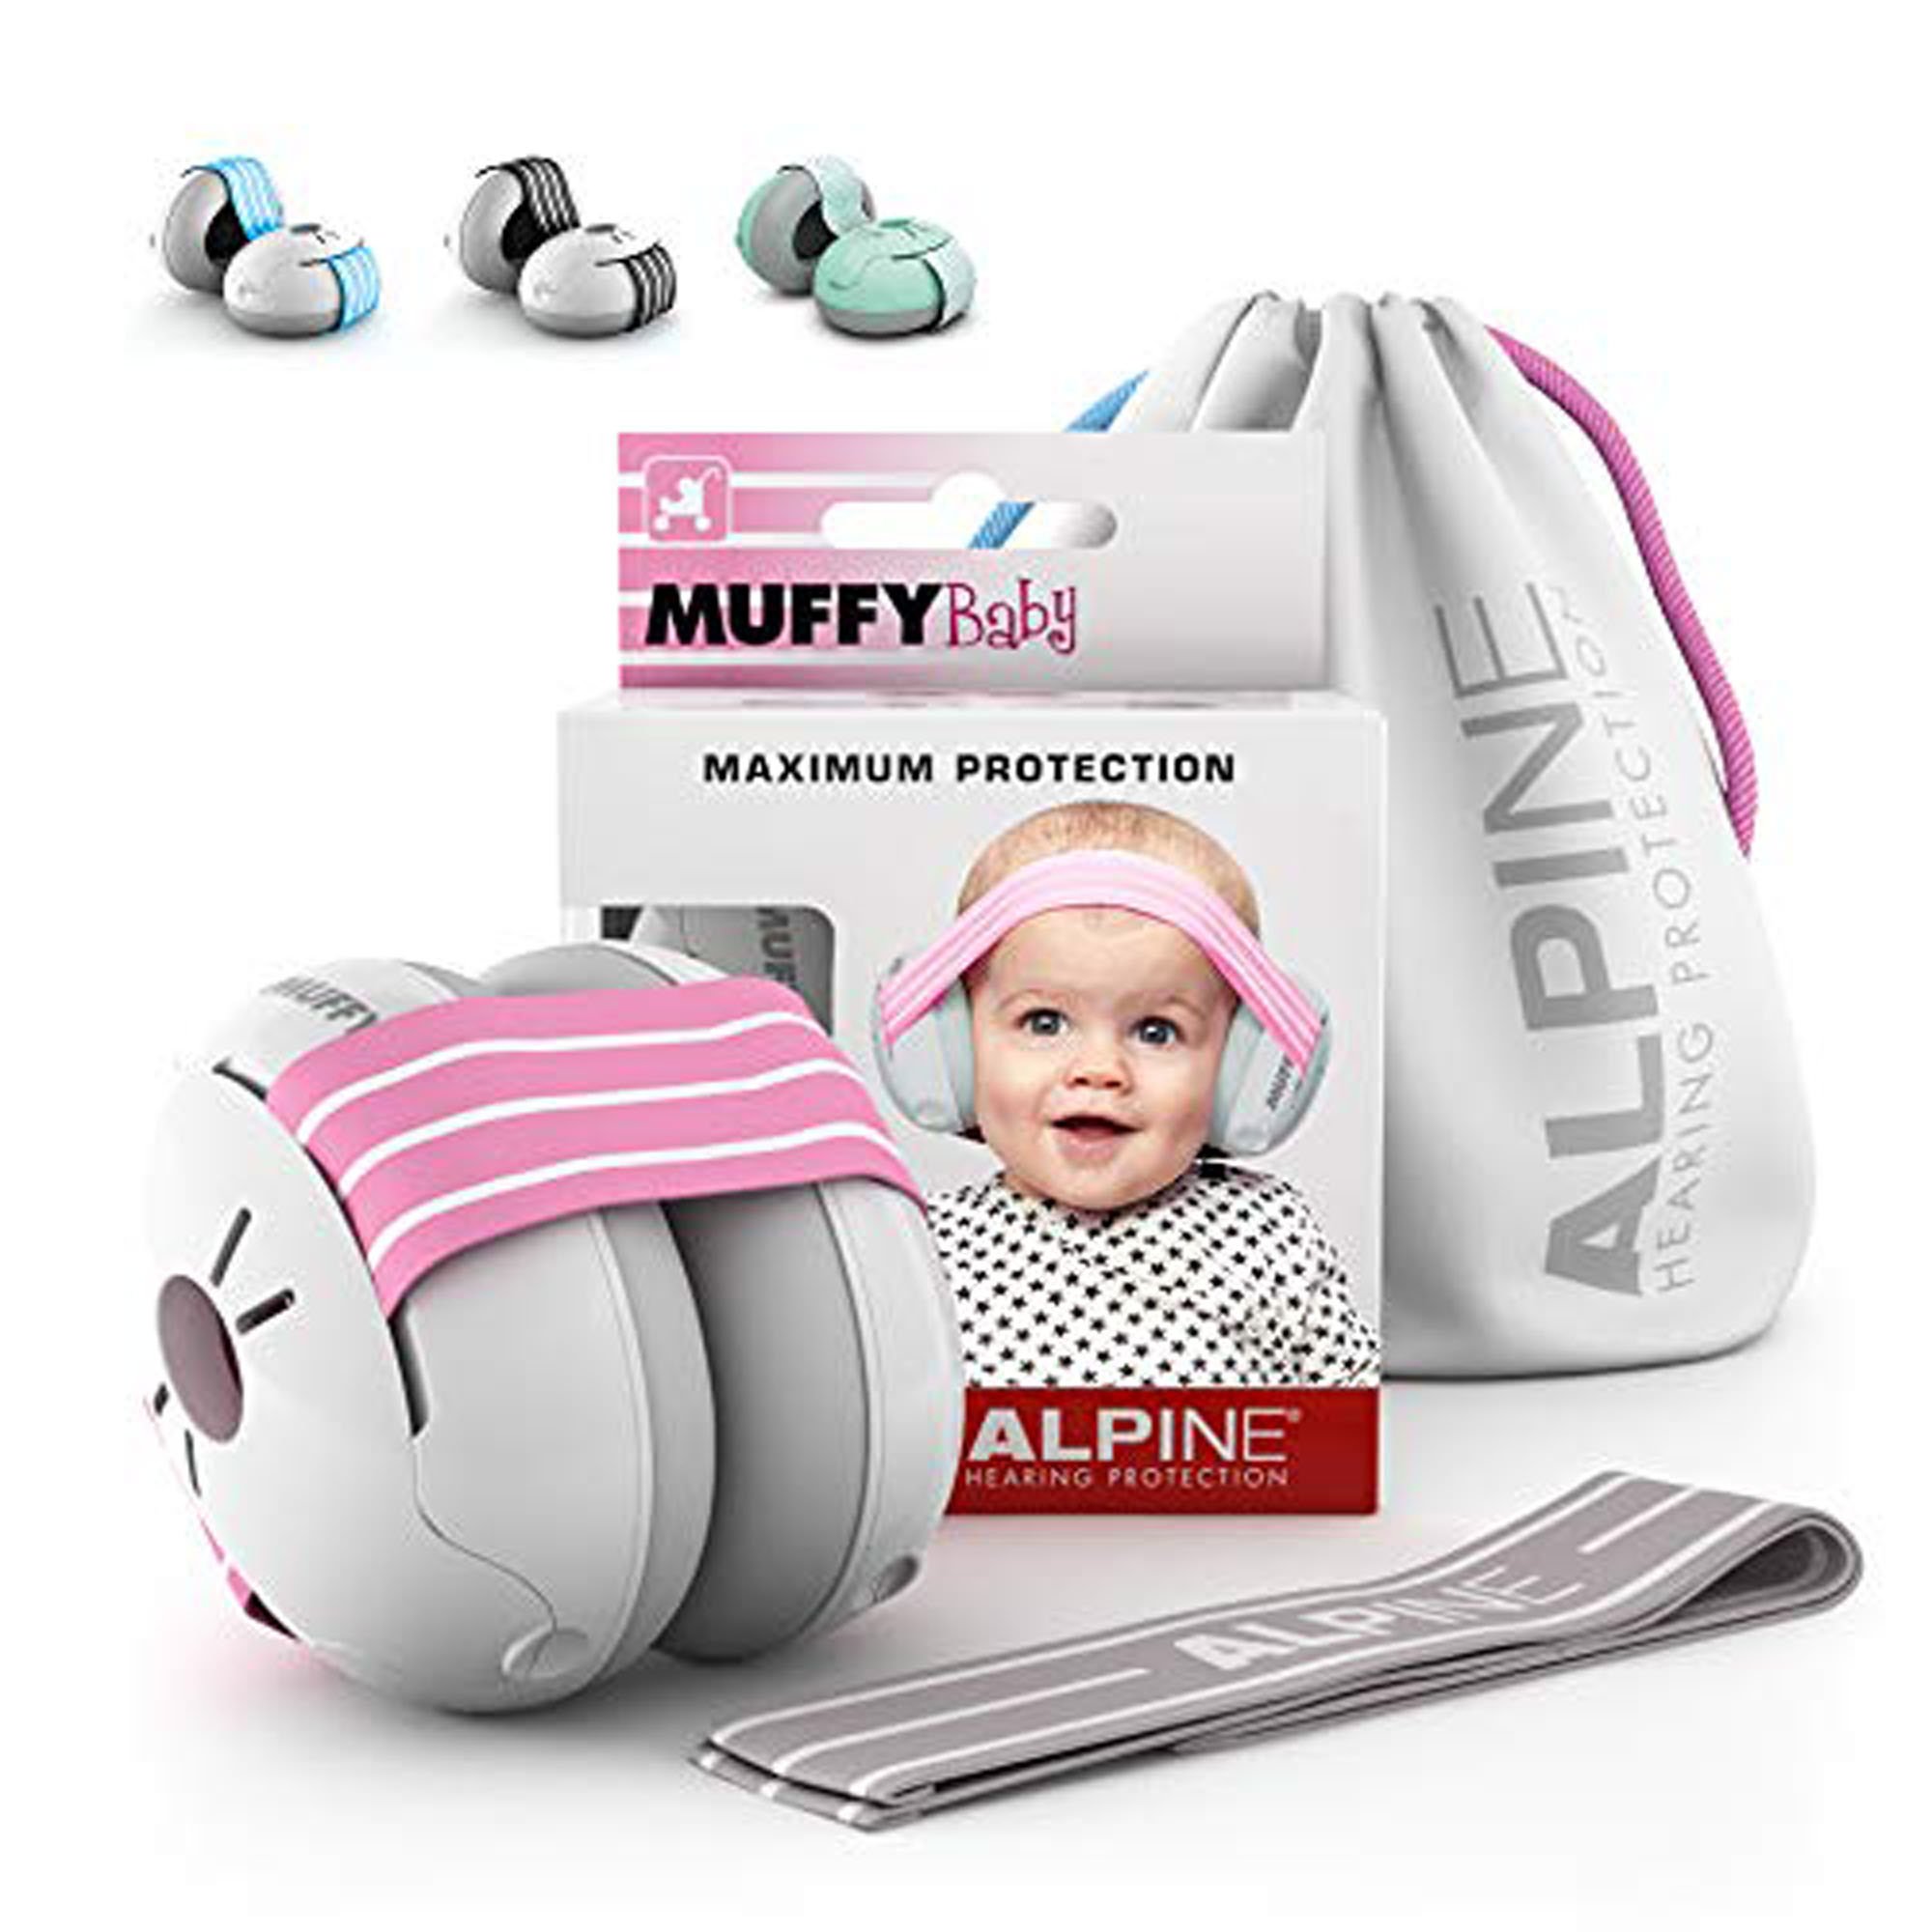 Alpine Muffy Pink casque anti-bruit pour enfants